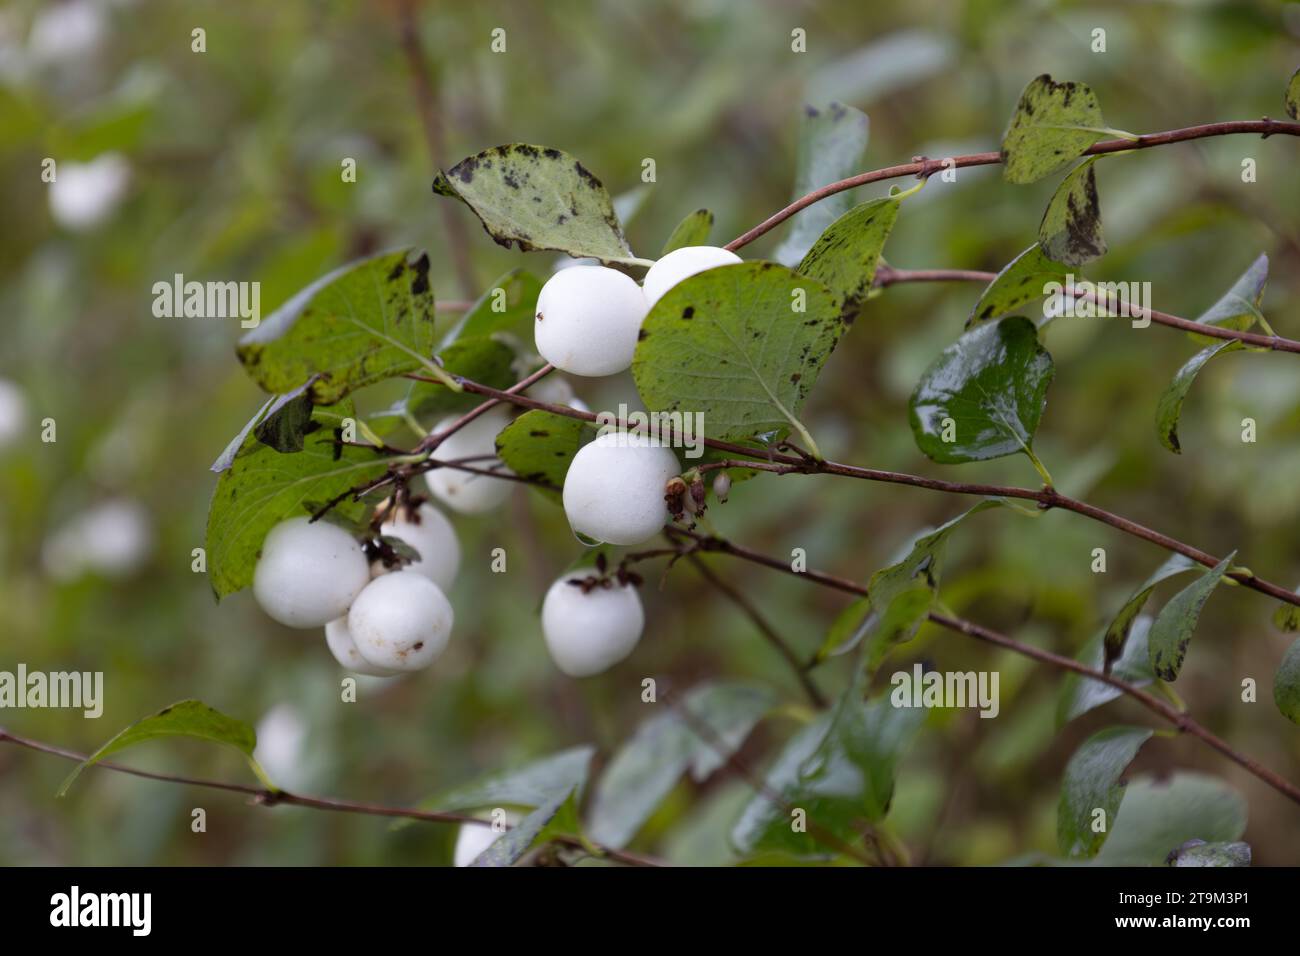 La nevosa bianca un arbusto della famiglia caprifoglio, una bacca velenosa contenente saponine, foto scattata a novembre, Paesi Bassi Foto Stock